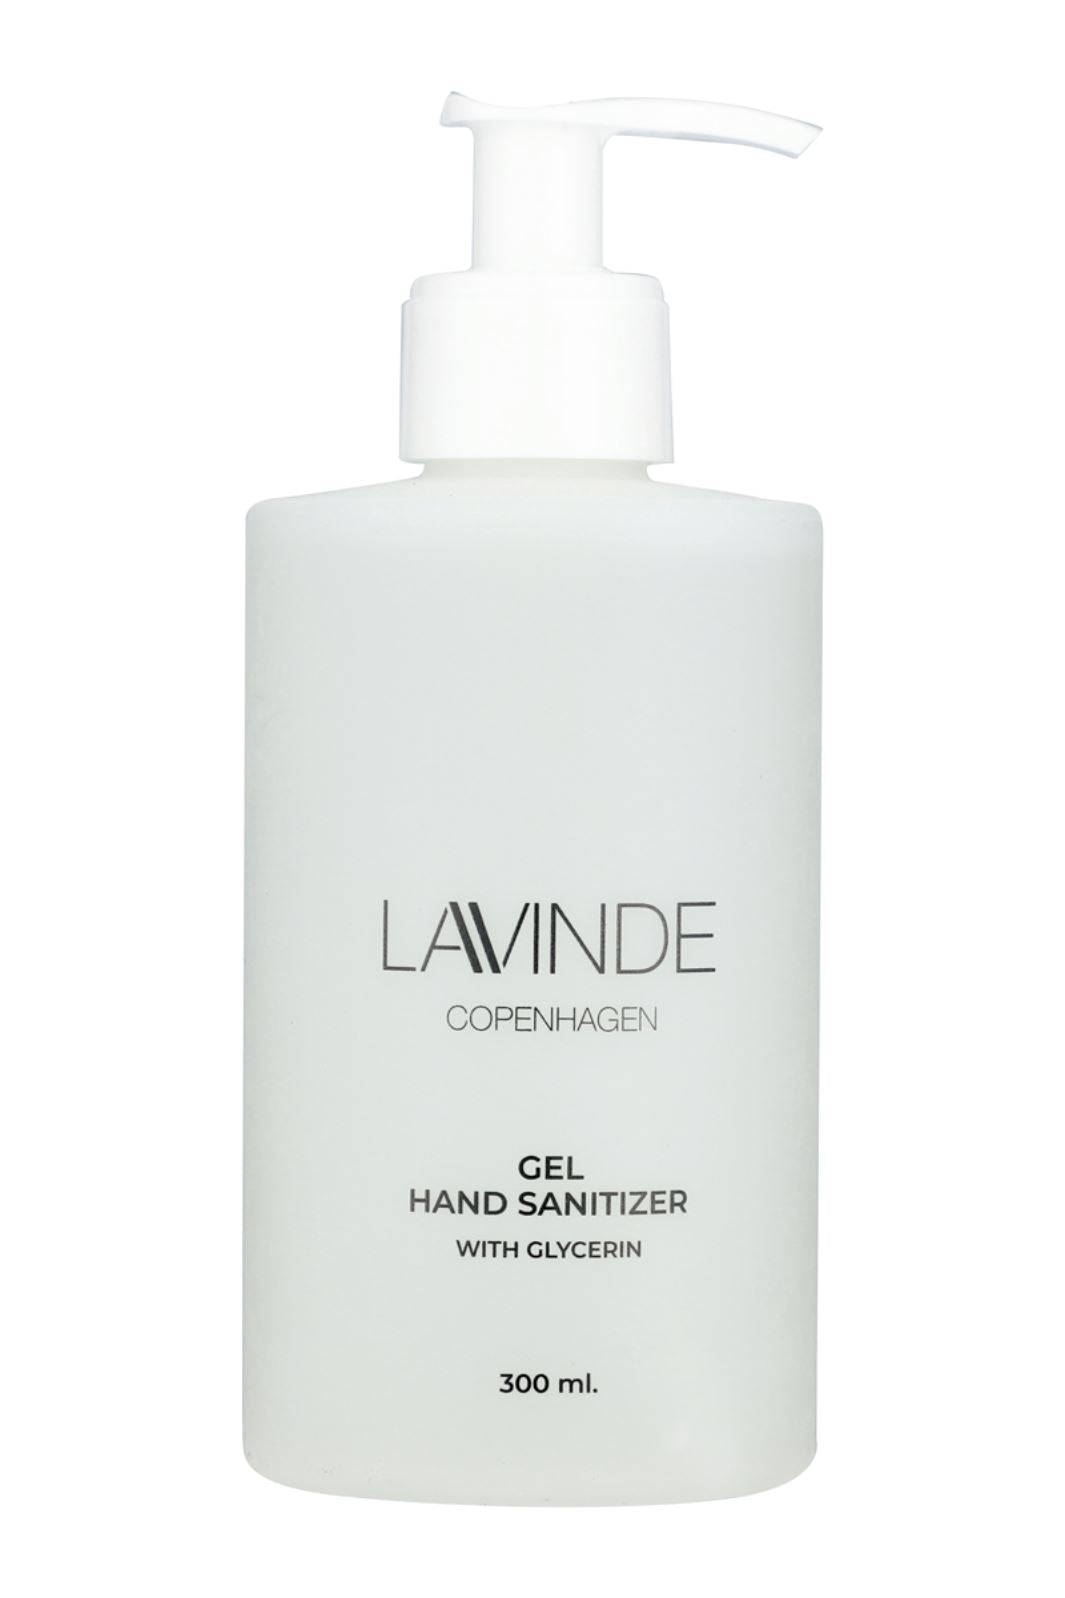 Lavinde Copenhagen - Hand Sanitizer - Gel - 300 ml Hudpleje 